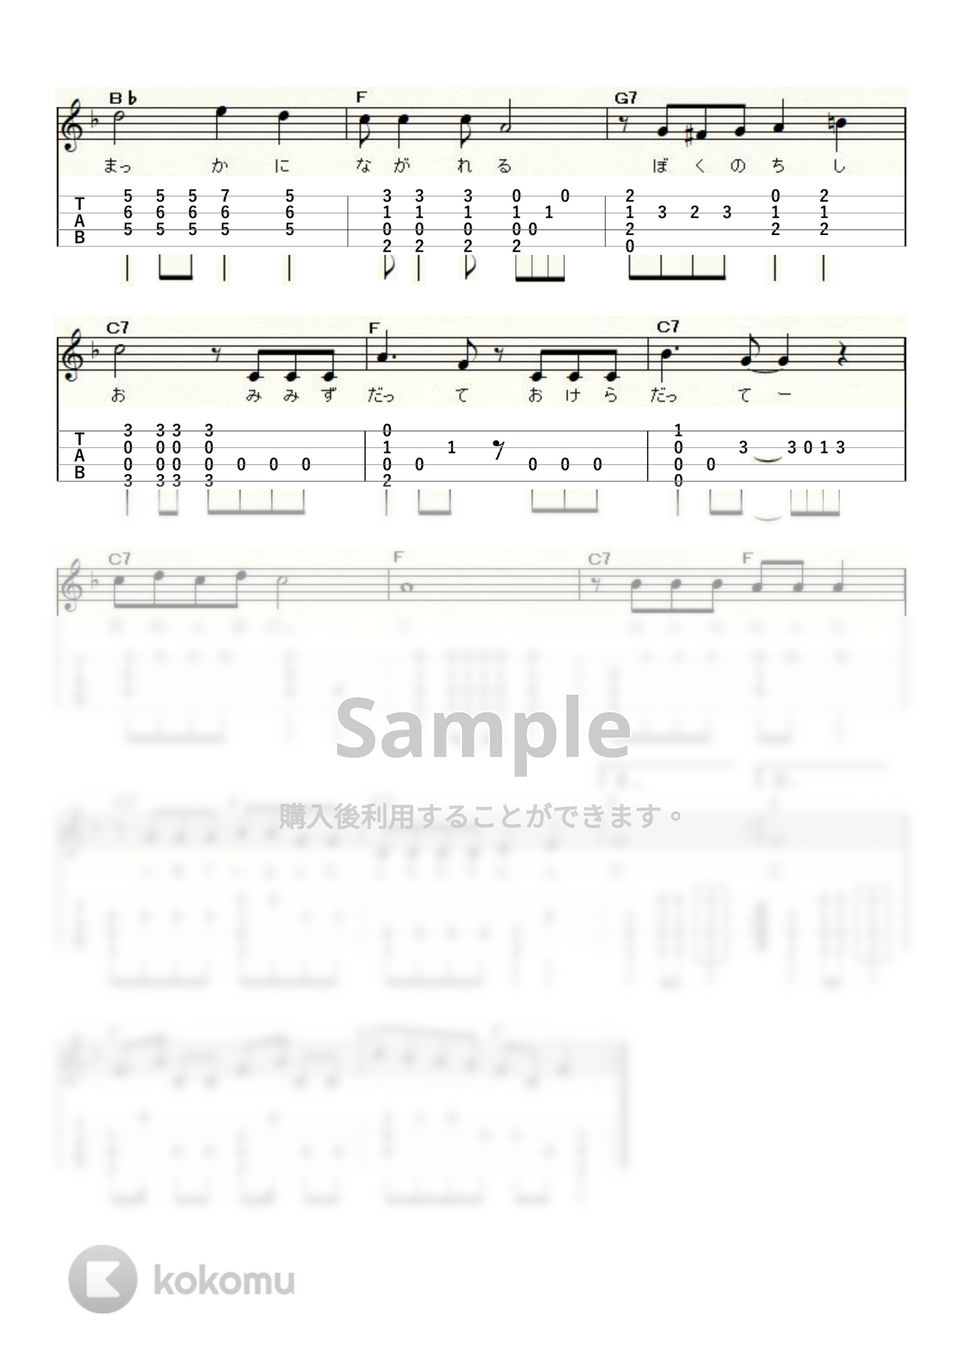 手のひらを太陽に (ｳｸﾚﾚｿﾛ/High-G・Low-G/中級) by ukulelepapa